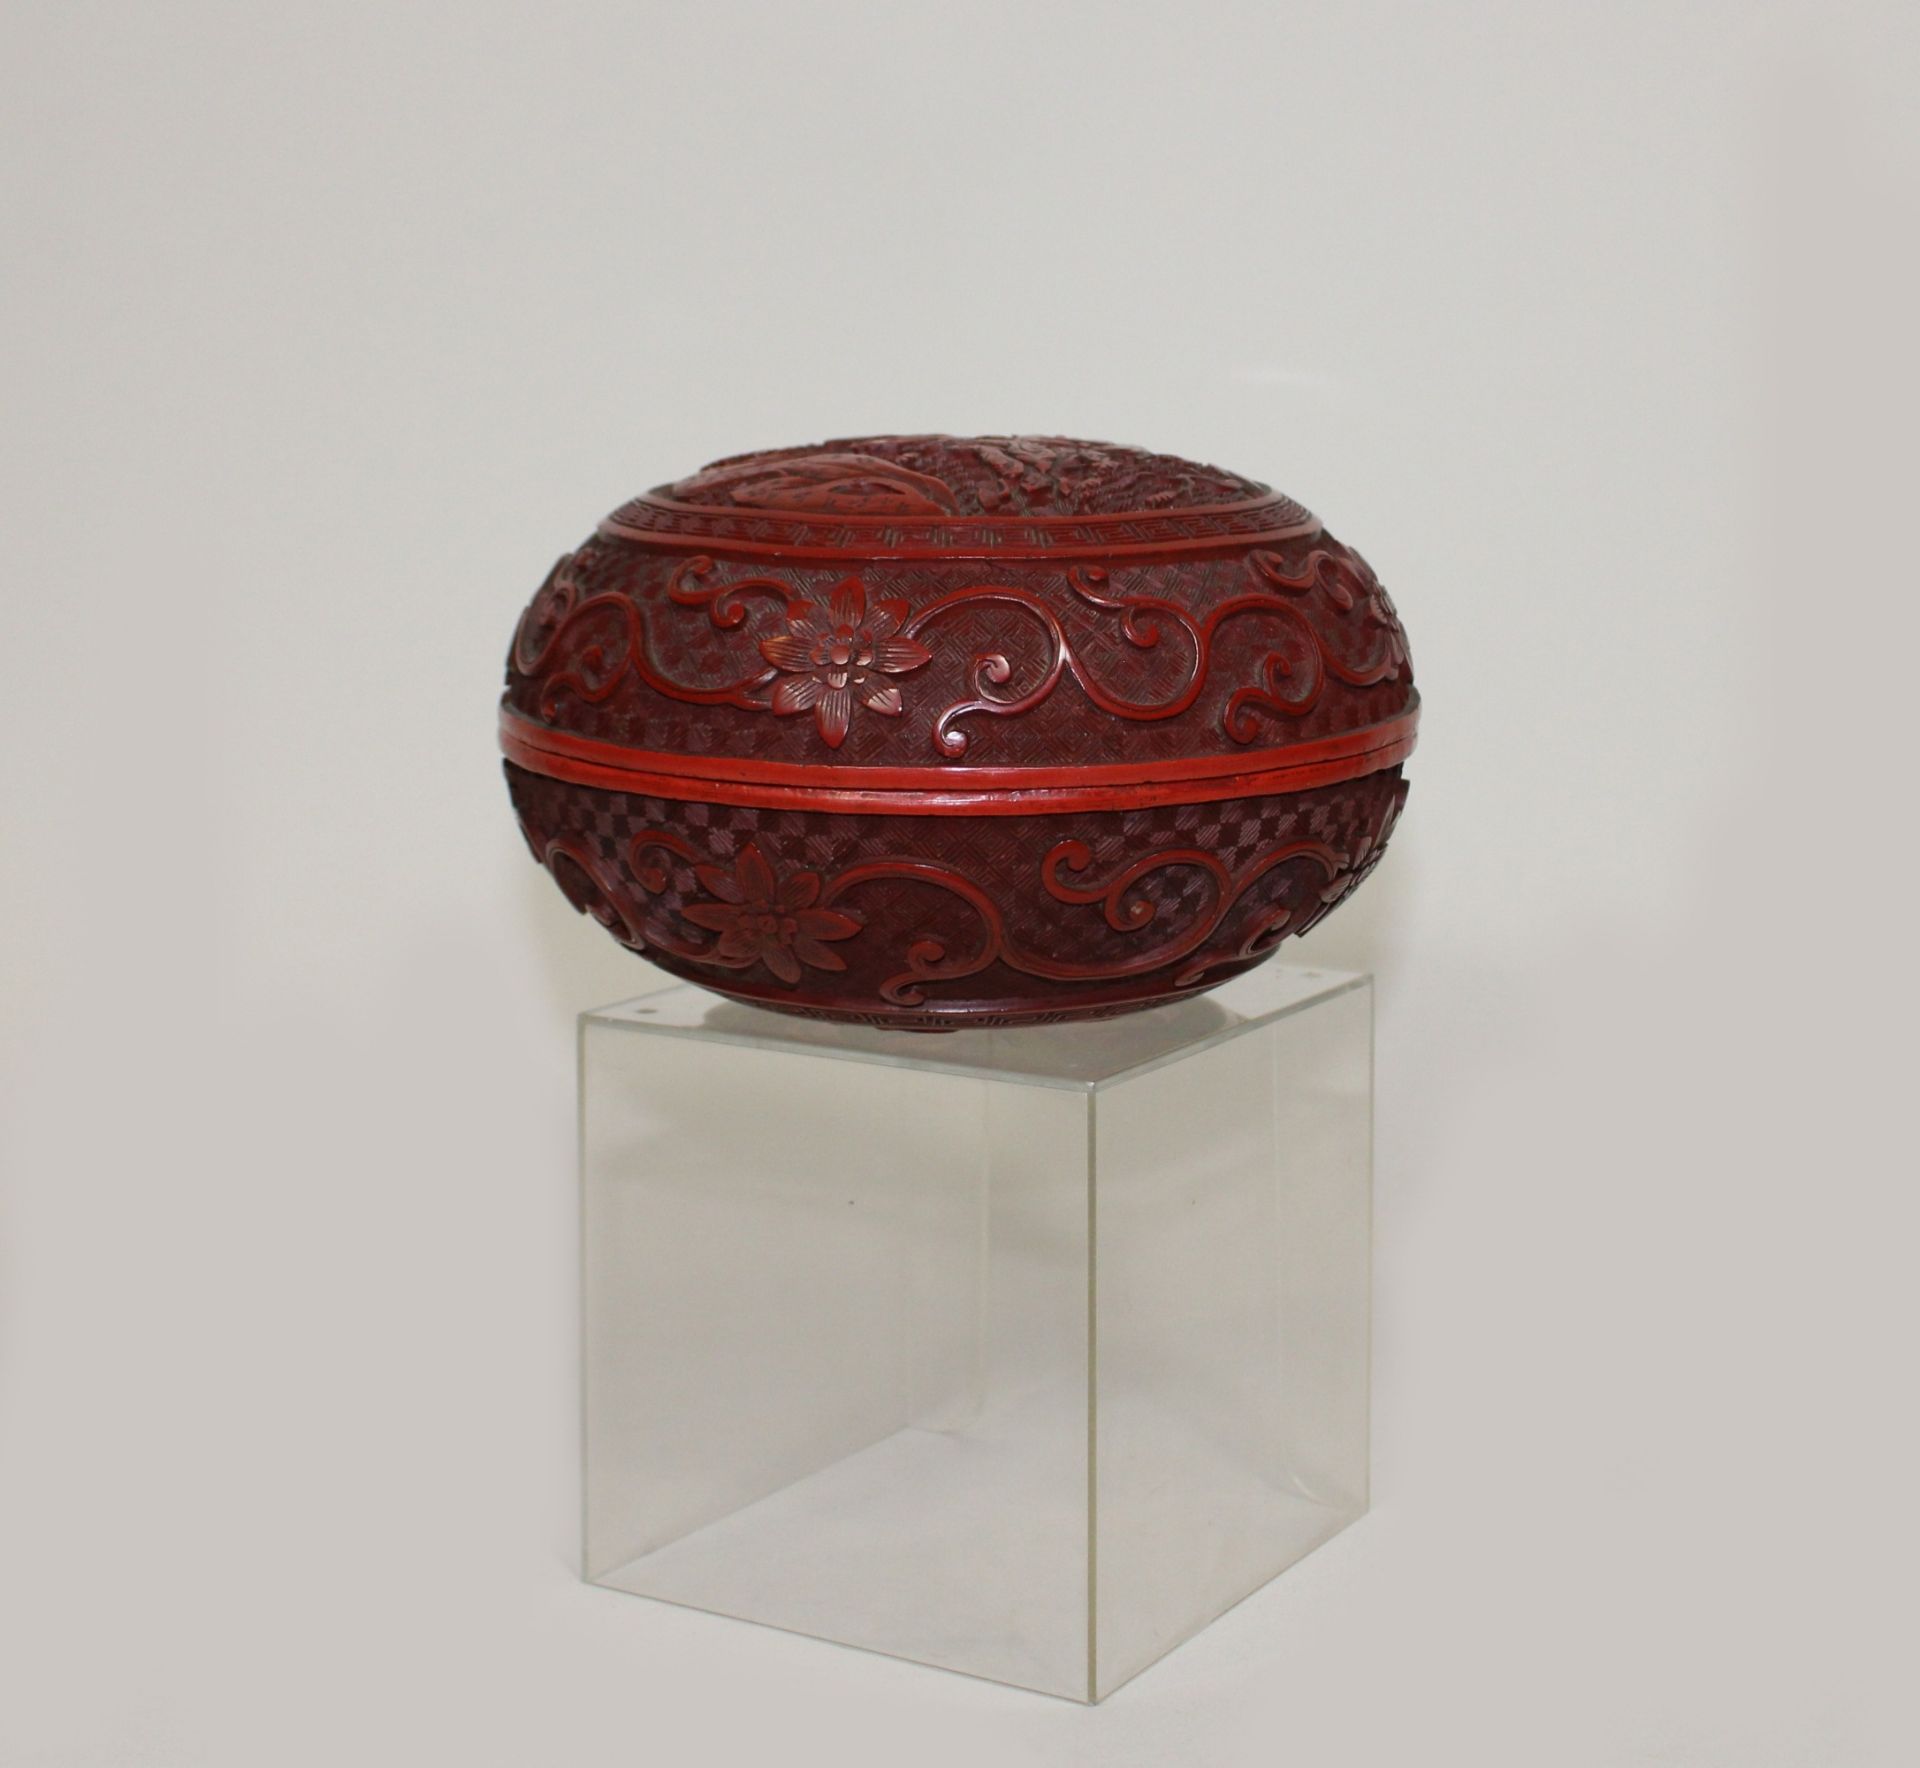 Chinesische Lackdose, wohl 18./19. Jh., Holz, runde Form, mit Lackreliefschnitzerei